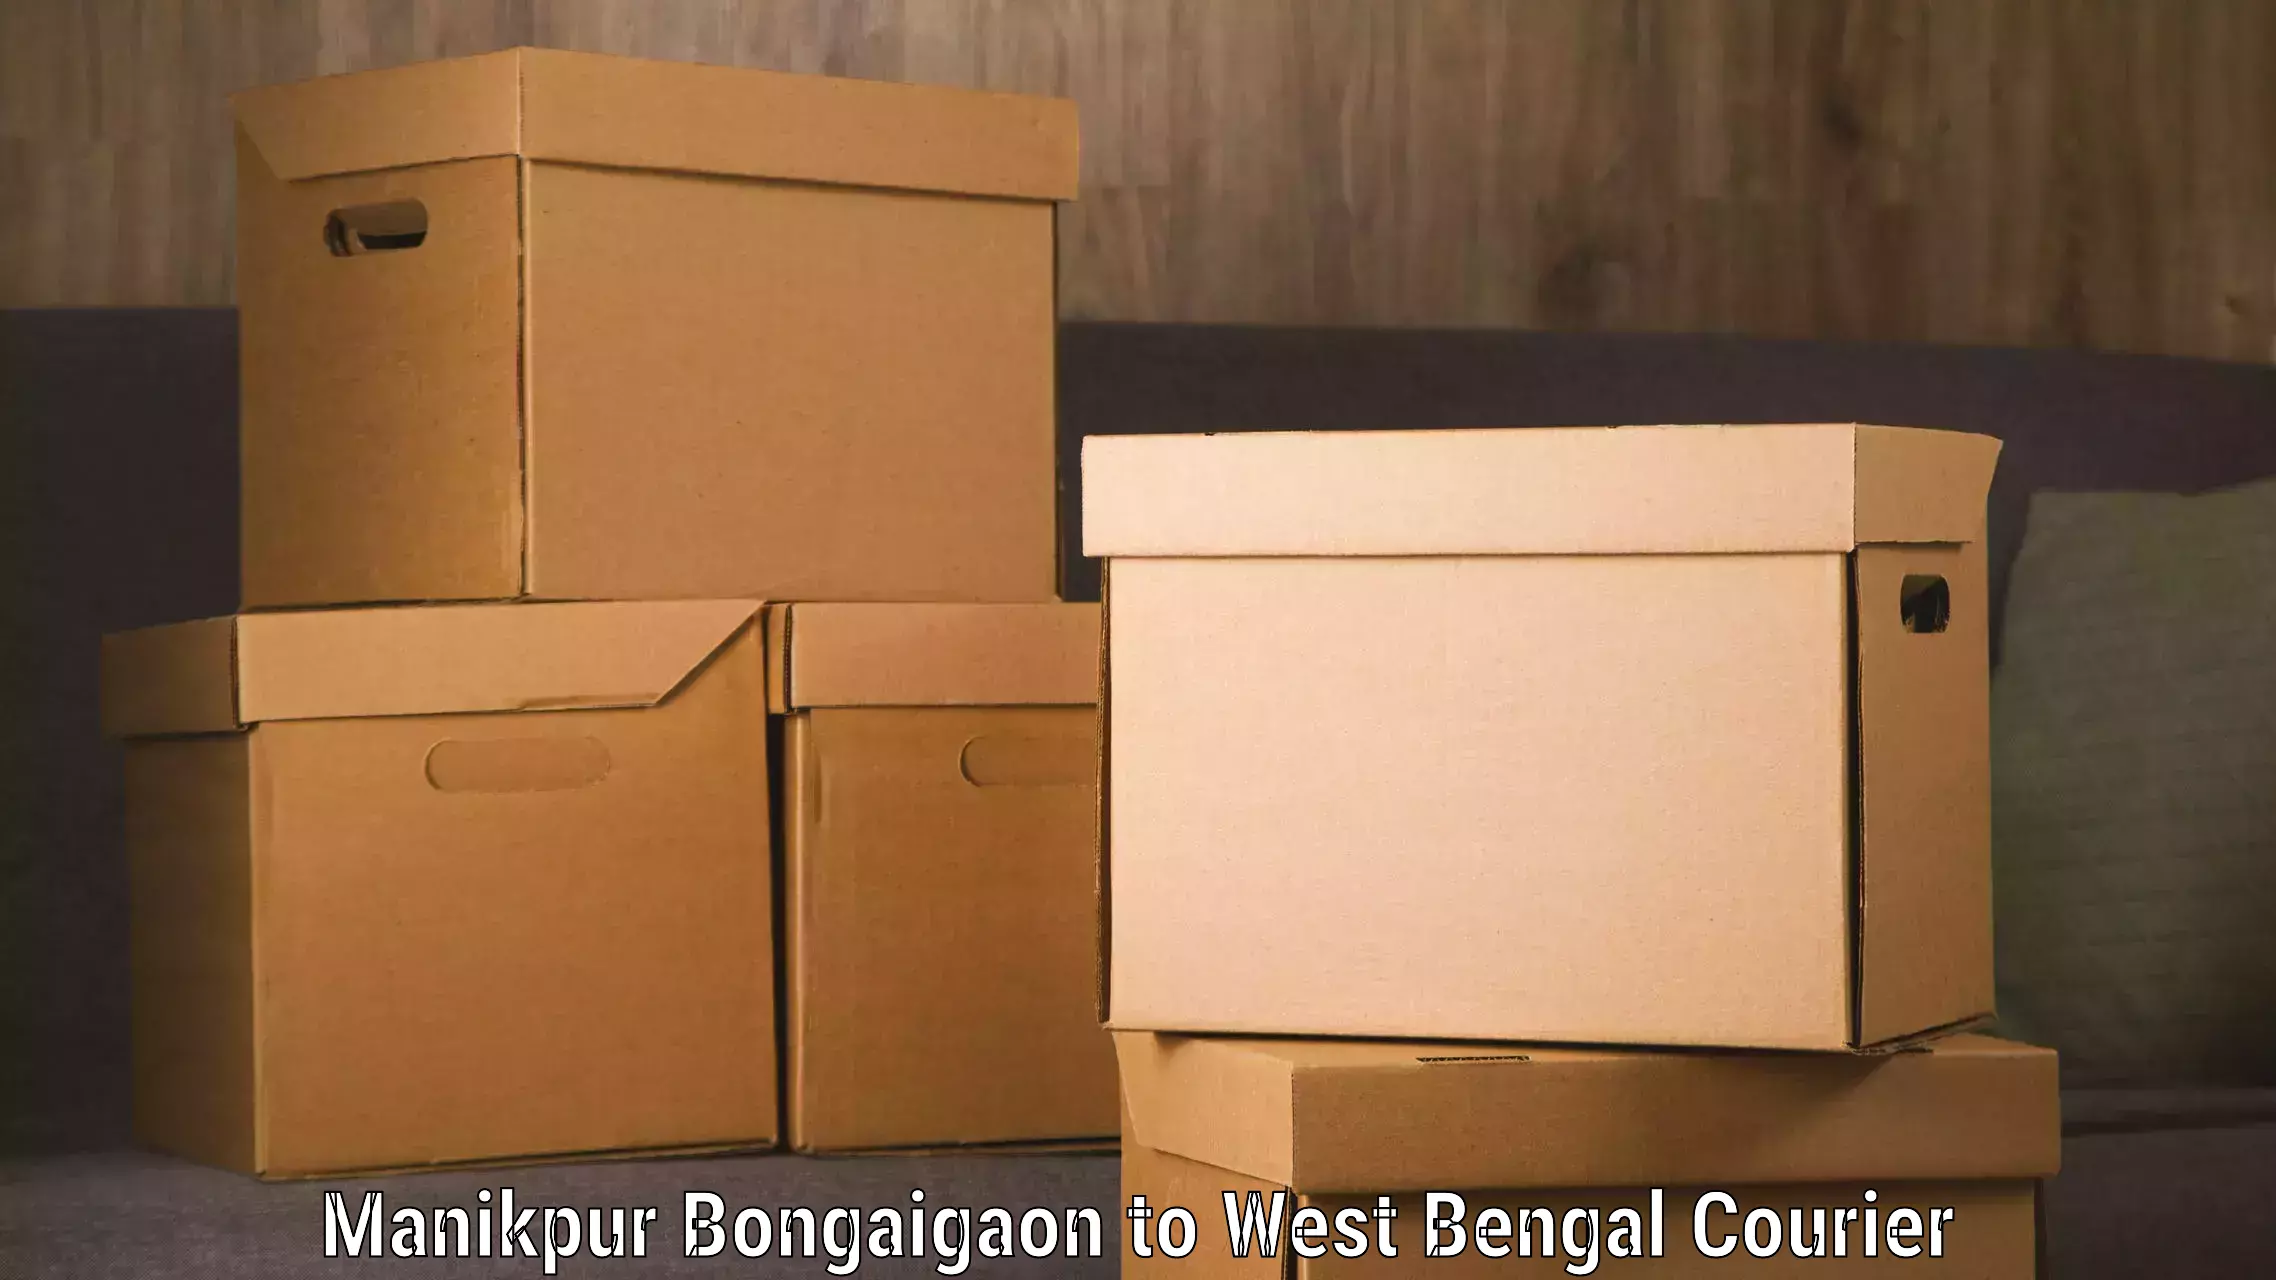 Baggage transport network Manikpur Bongaigaon to Khardah